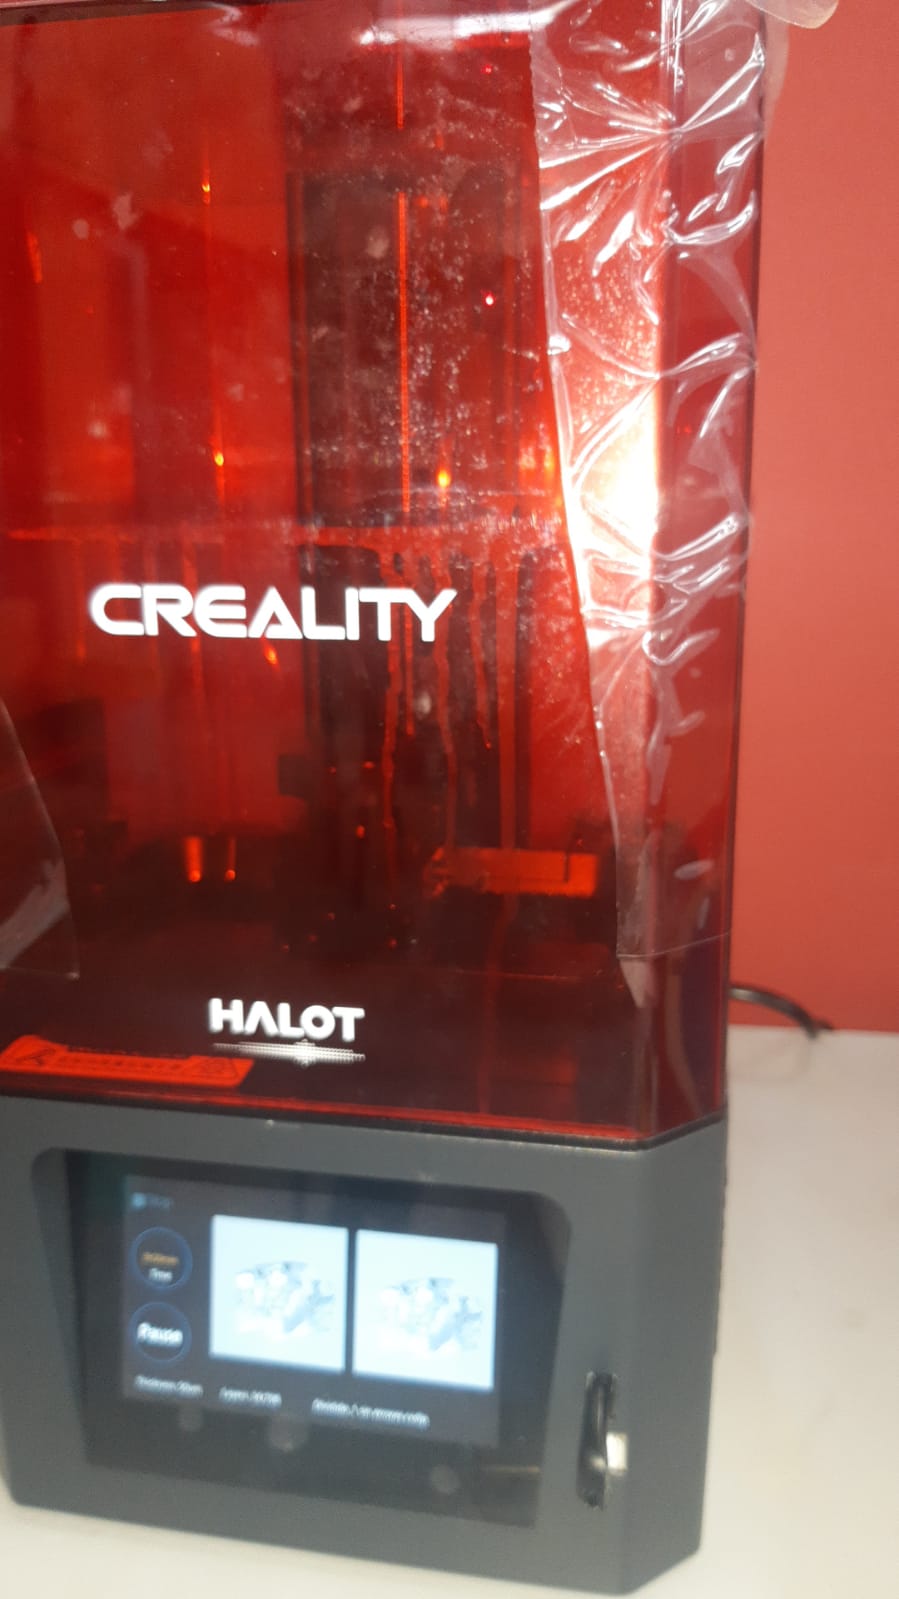 Creality_printer